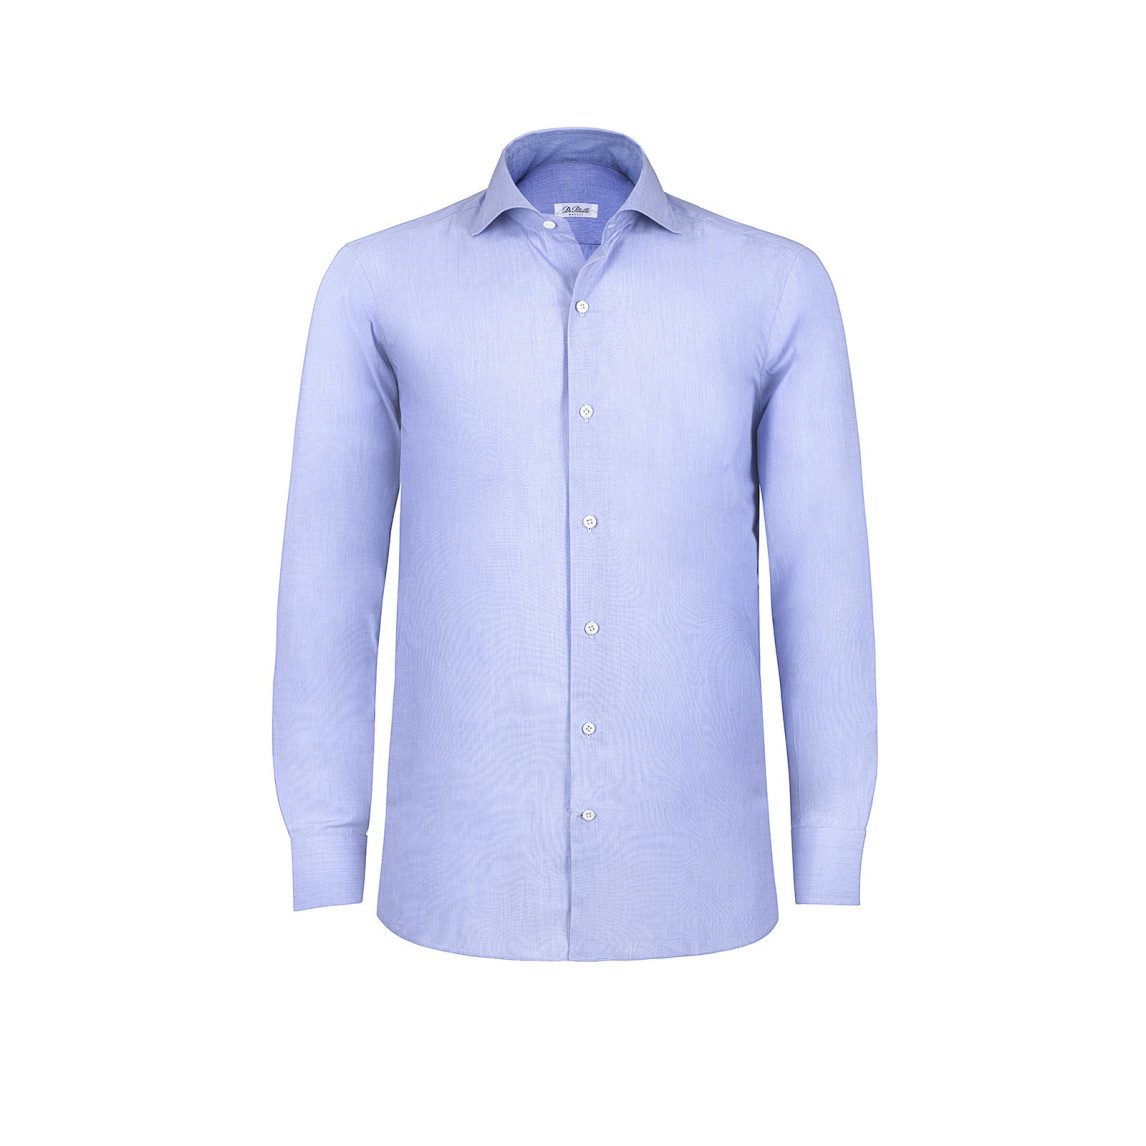 Light Blue Cotton Poplin Cutaway Collar Shirt